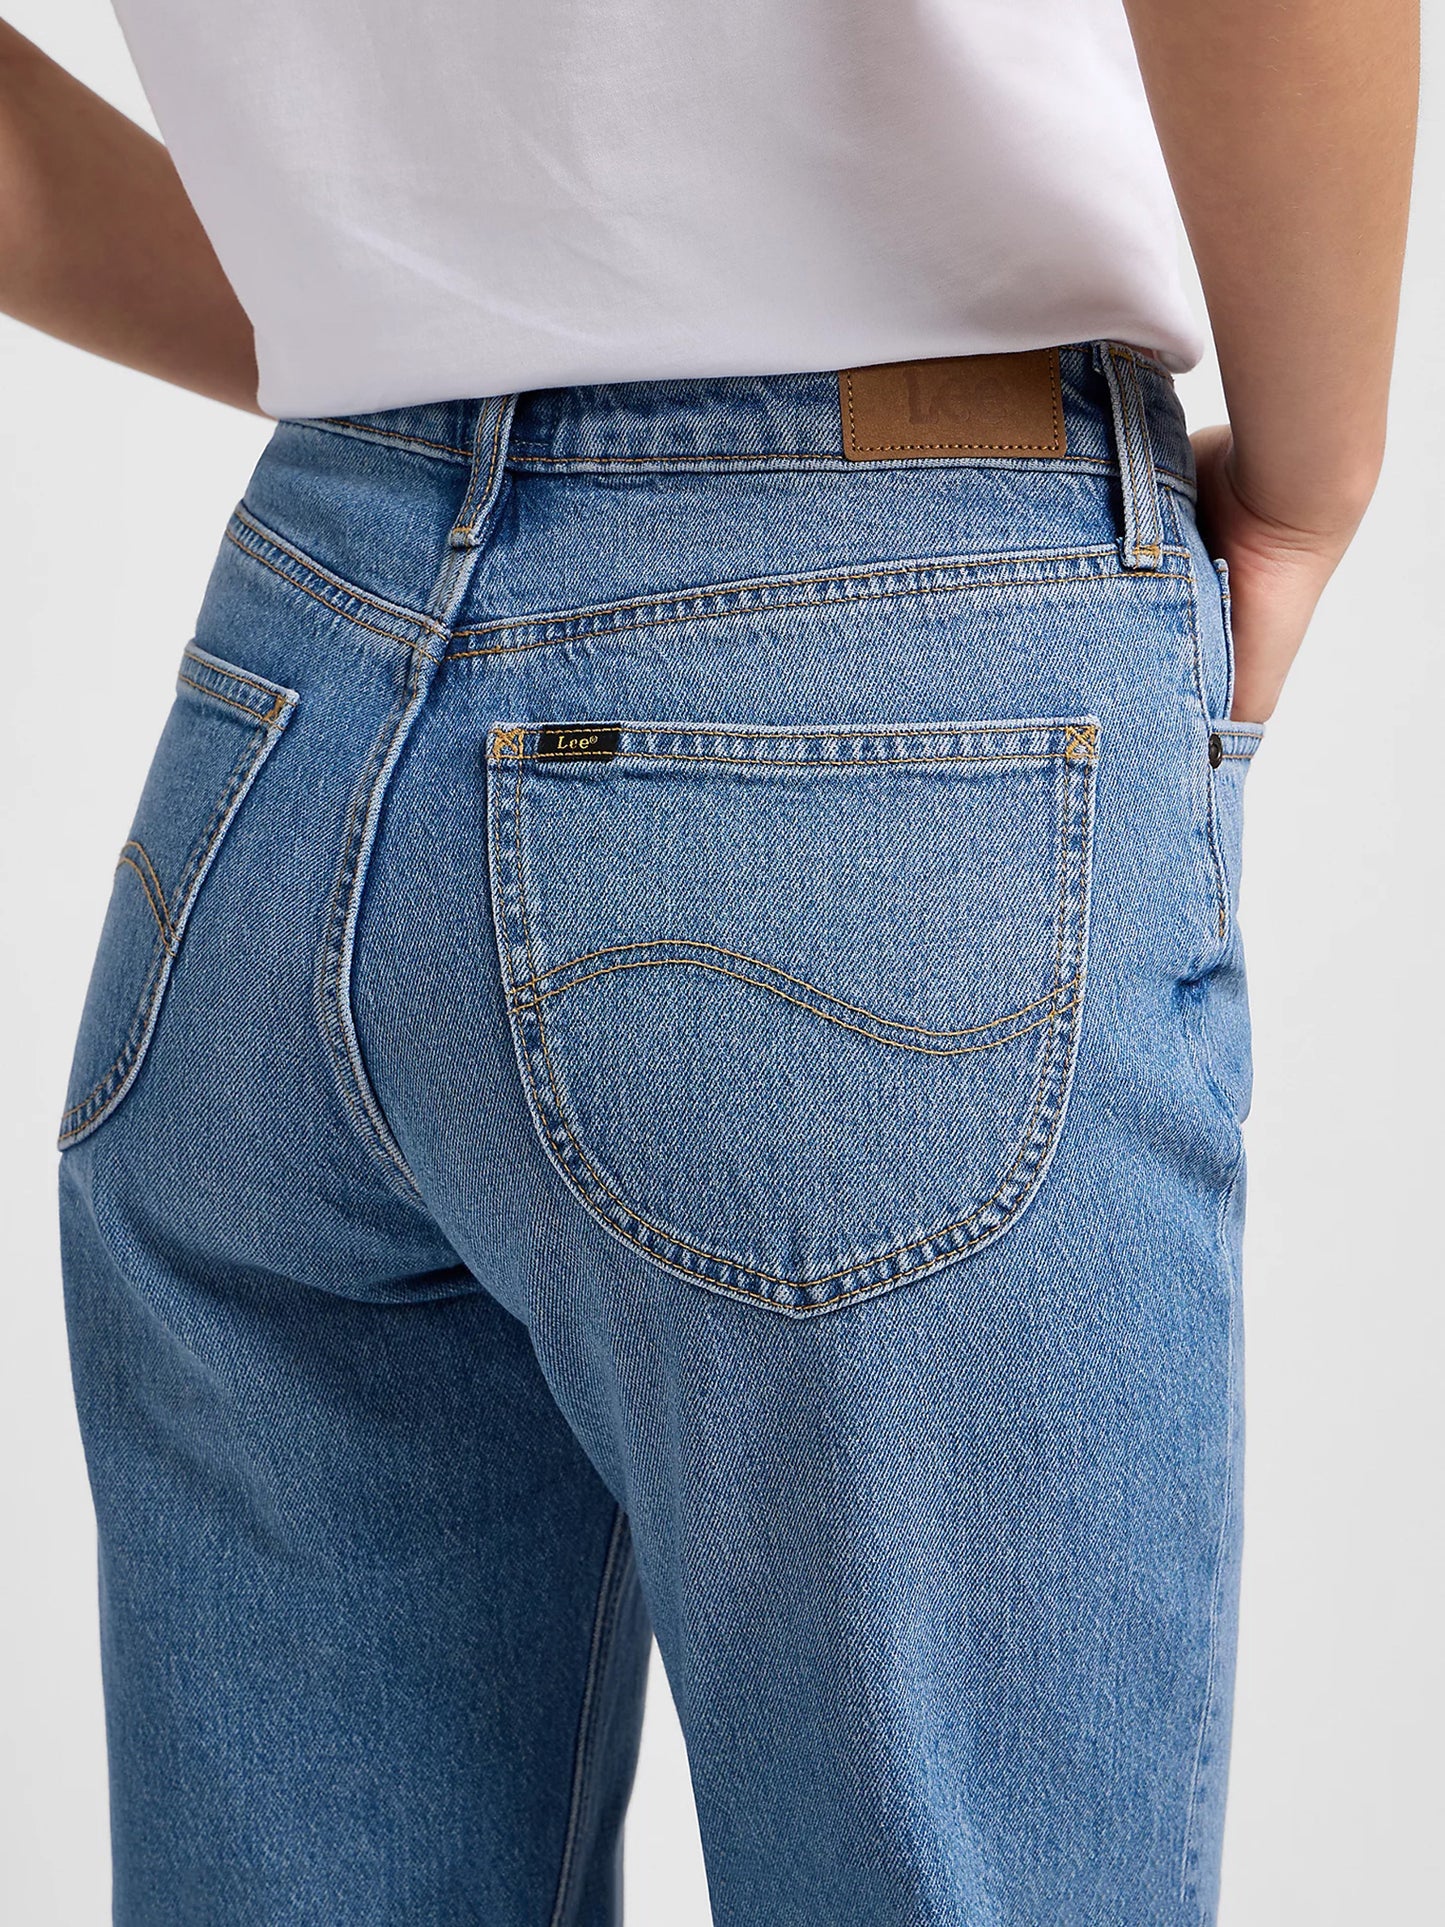 Γυναικείο παντελόνι τζιν CAROL IN MID SOHO L30UMWKP | L30UMWKP